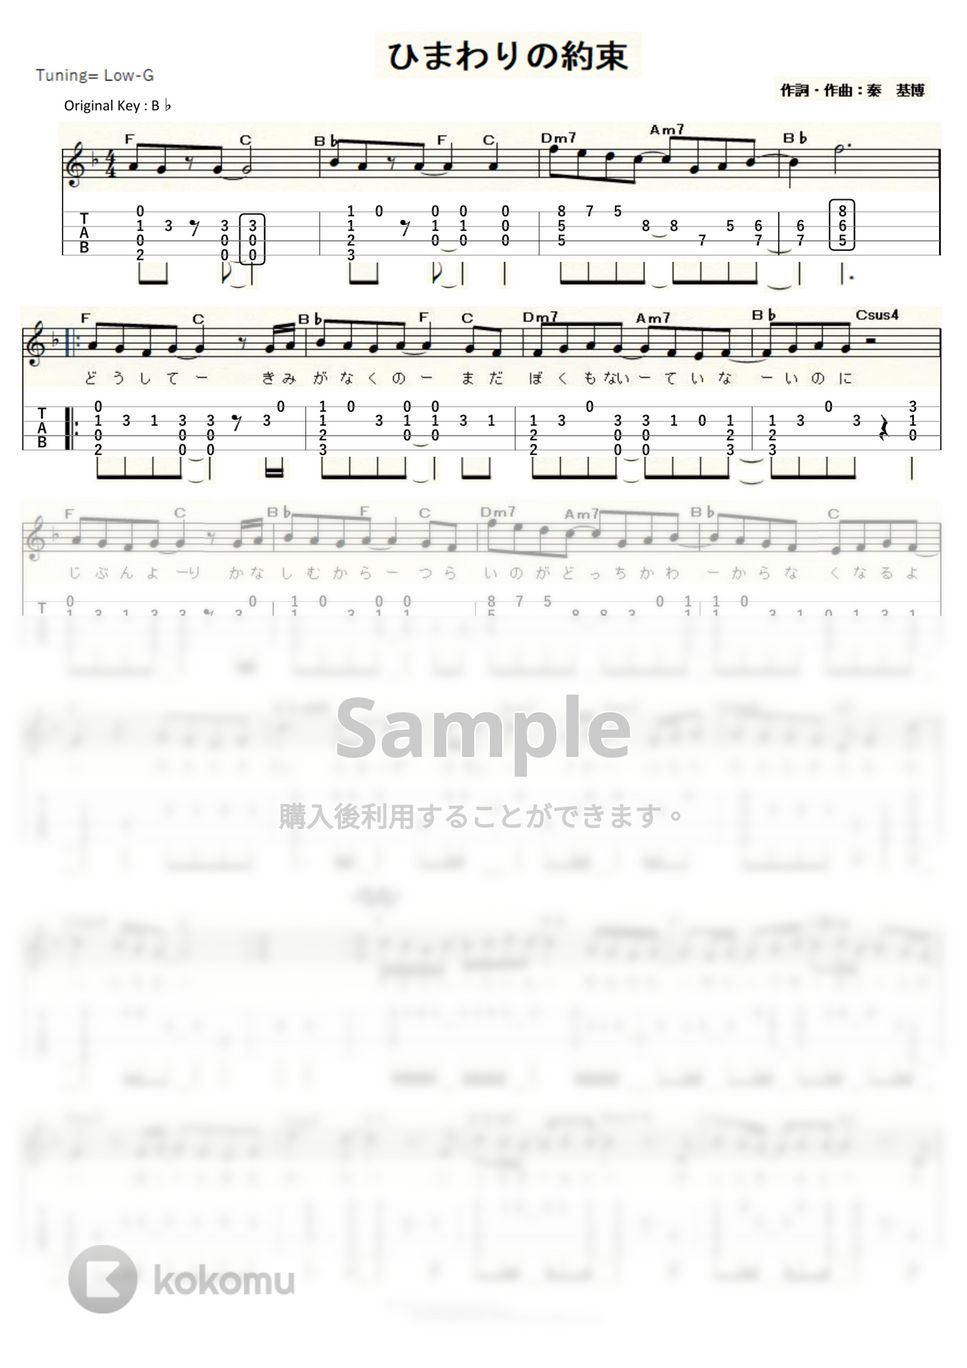 秦 基博 - ひまわりの約束 (ｳｸﾚﾚｿﾛ/Low-G/中級) by ukulelepapa